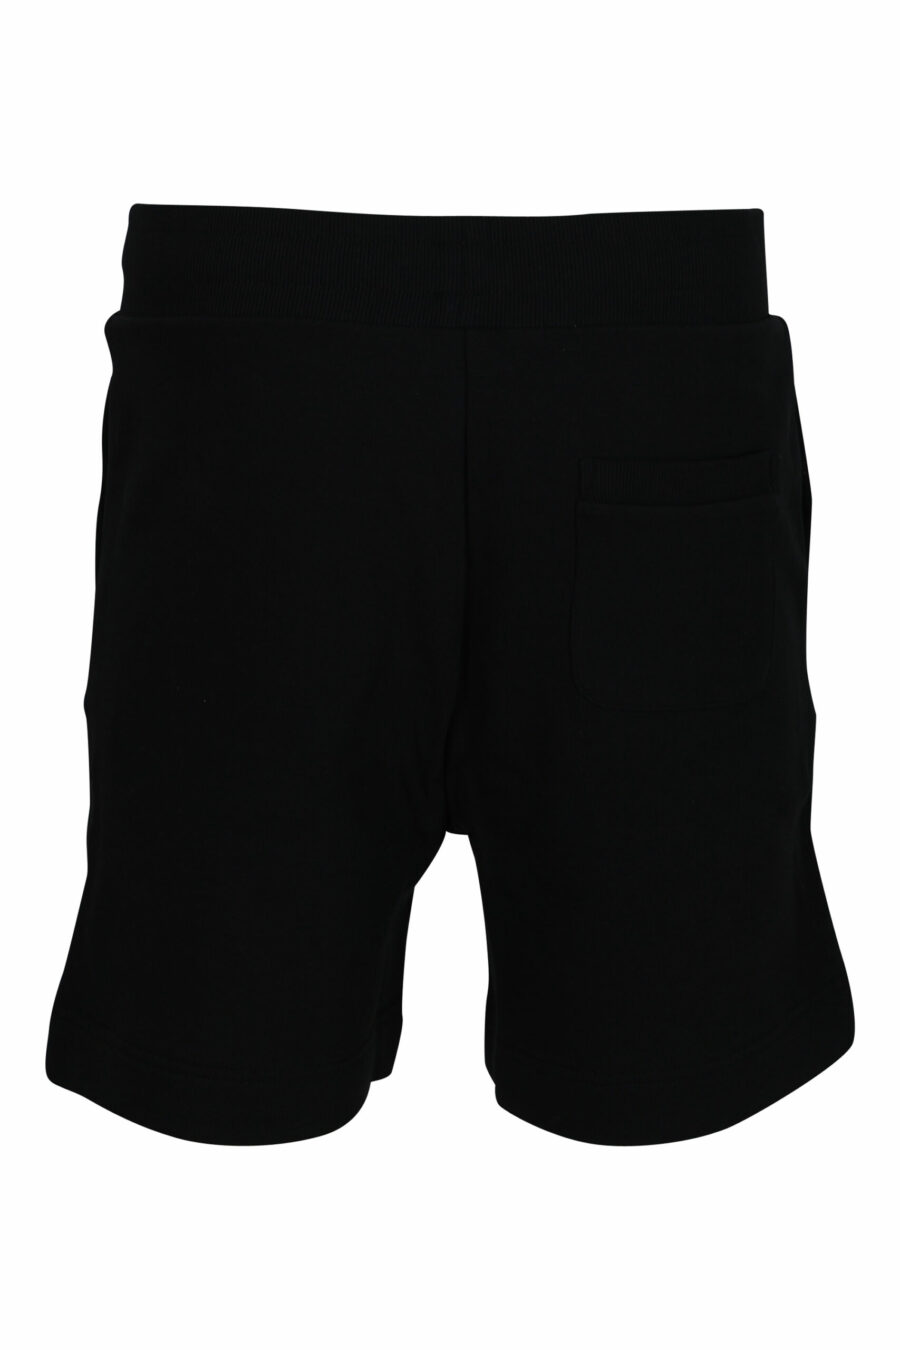 Pantalón de chándal negro con minilogo multicolor - 667113684666 1 scaled